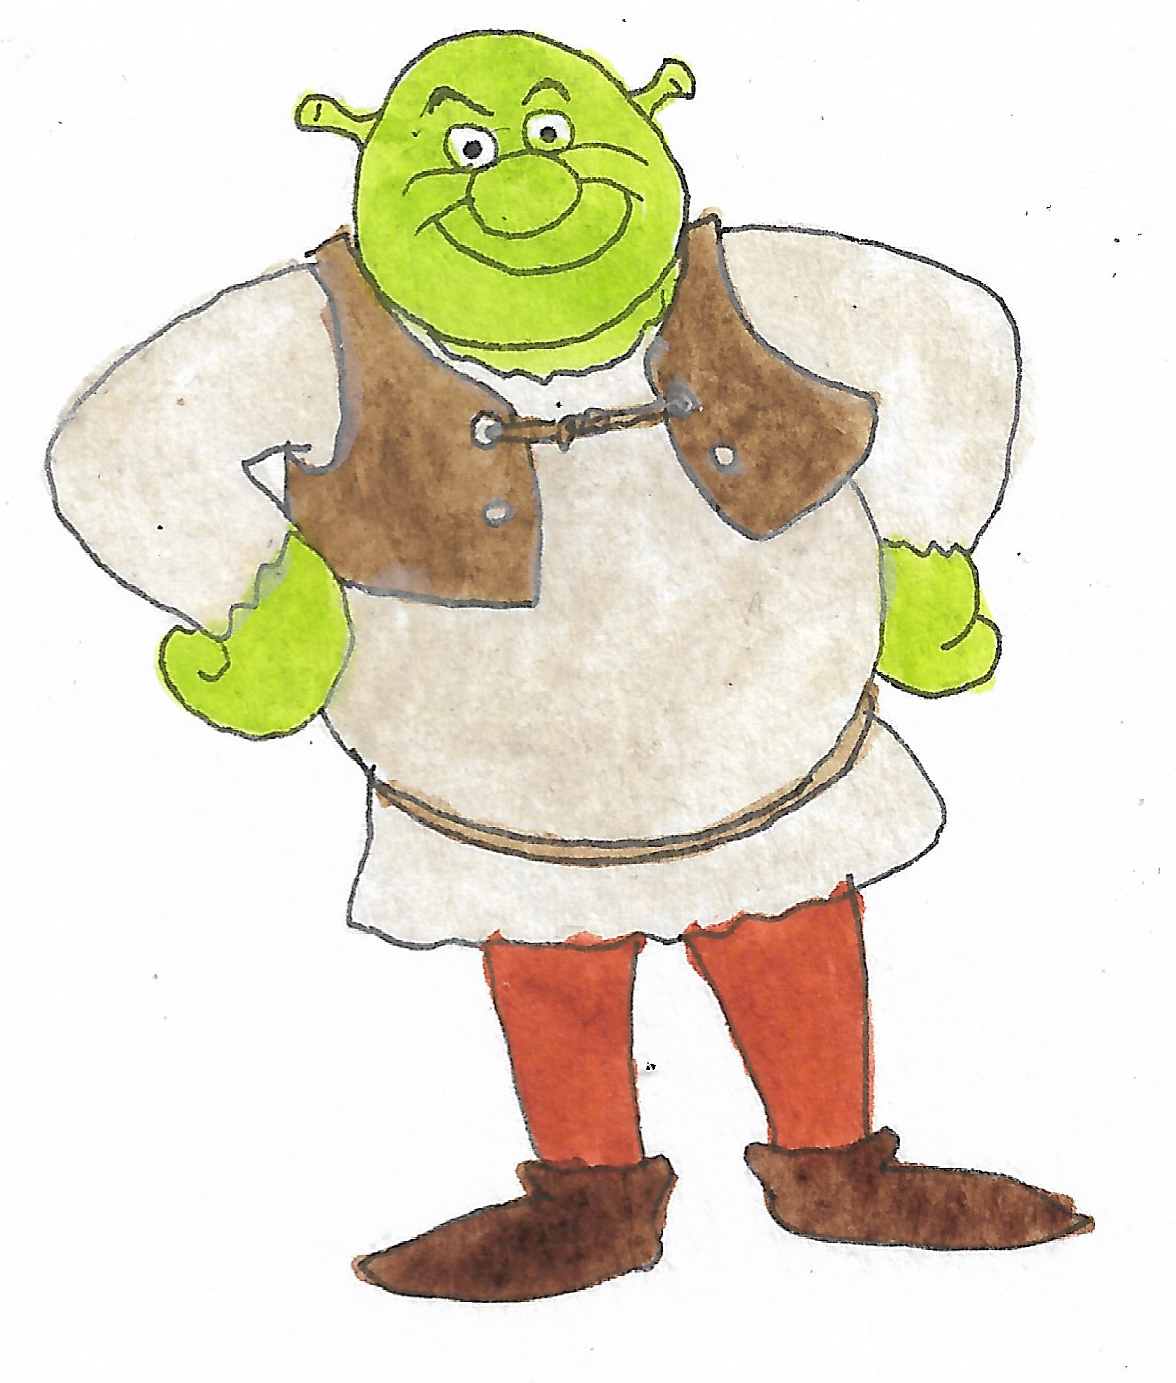 Shrek 2 (2) by KahlanAmnelle on DeviantArt